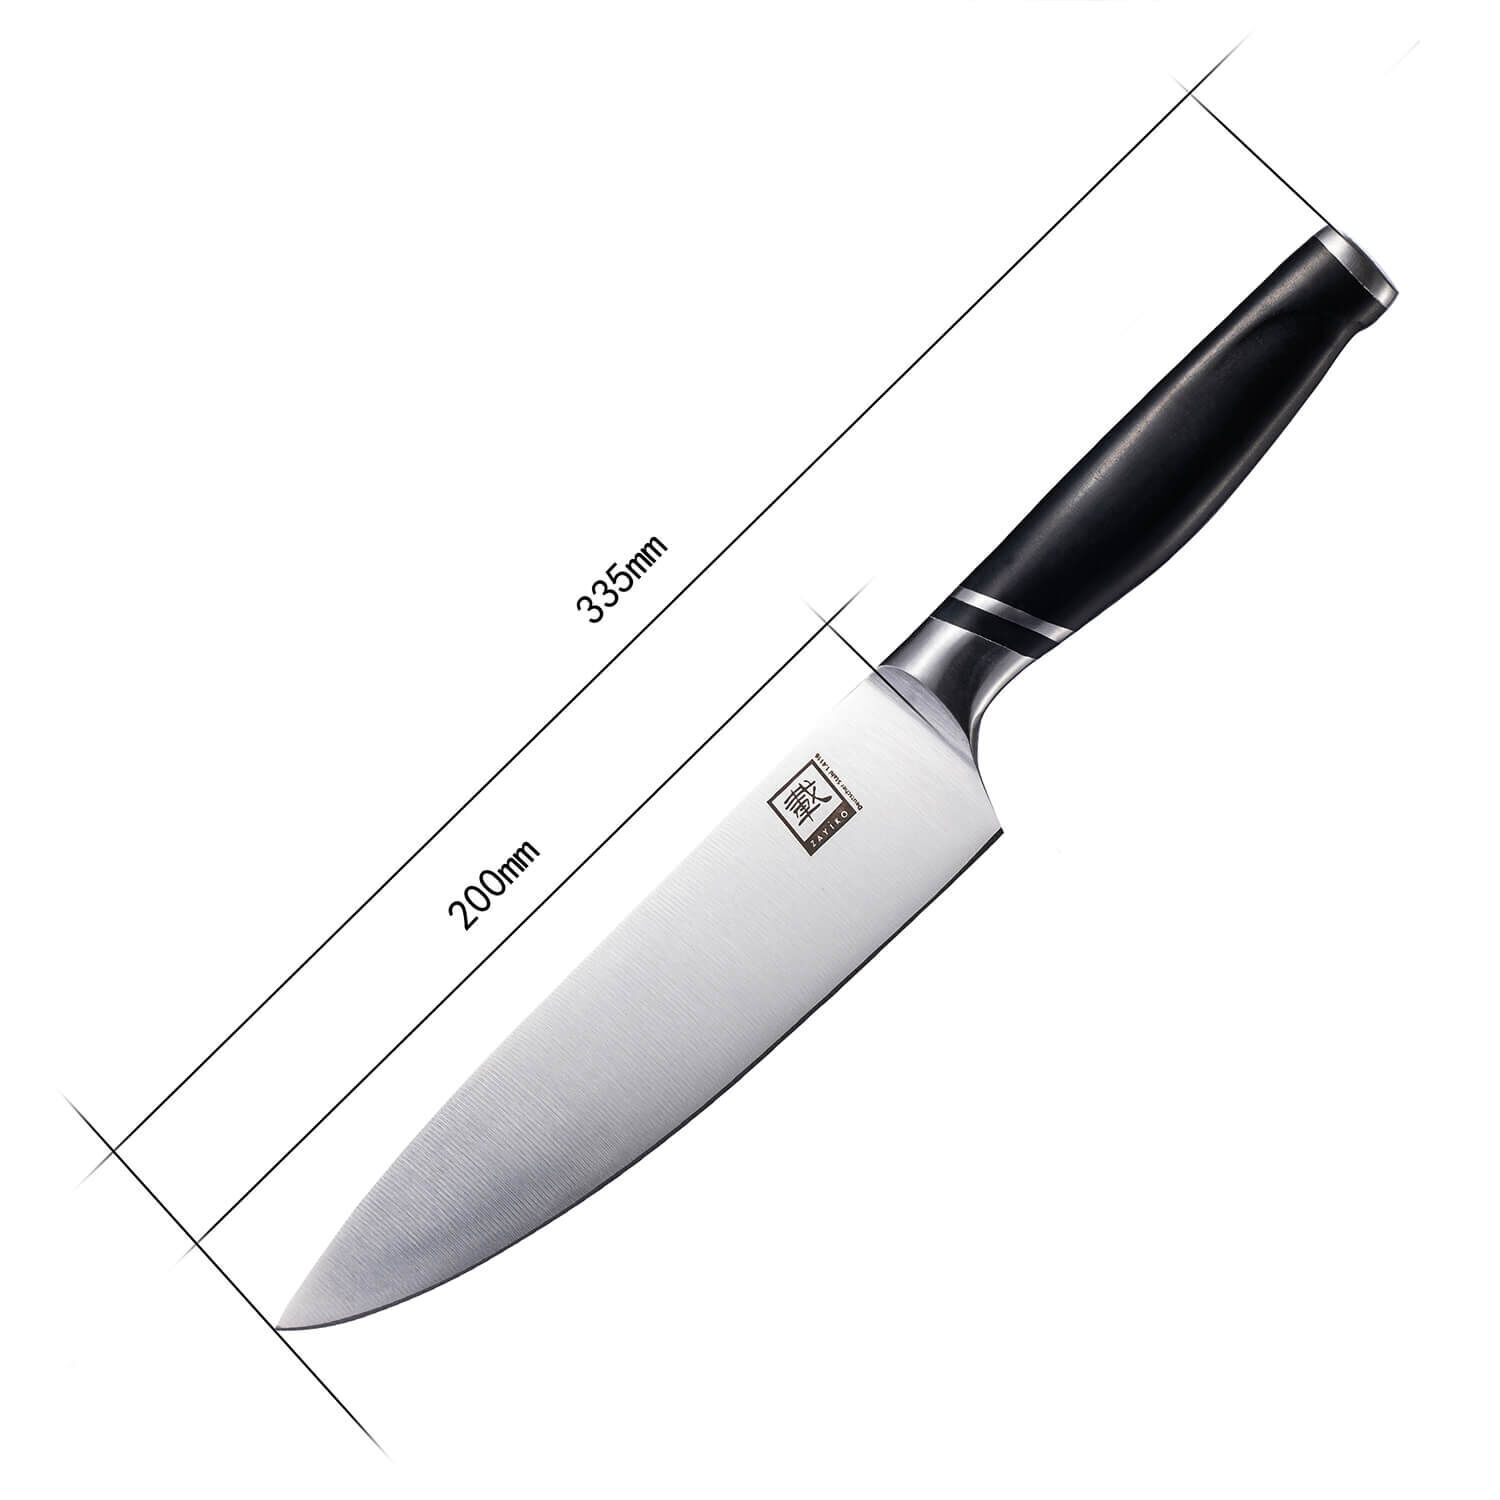 Zayiko NAMI Serie Chefmesser 20,00 cm Klinge | Deutscher Edelstahl | Ergonomischer ABS Griff